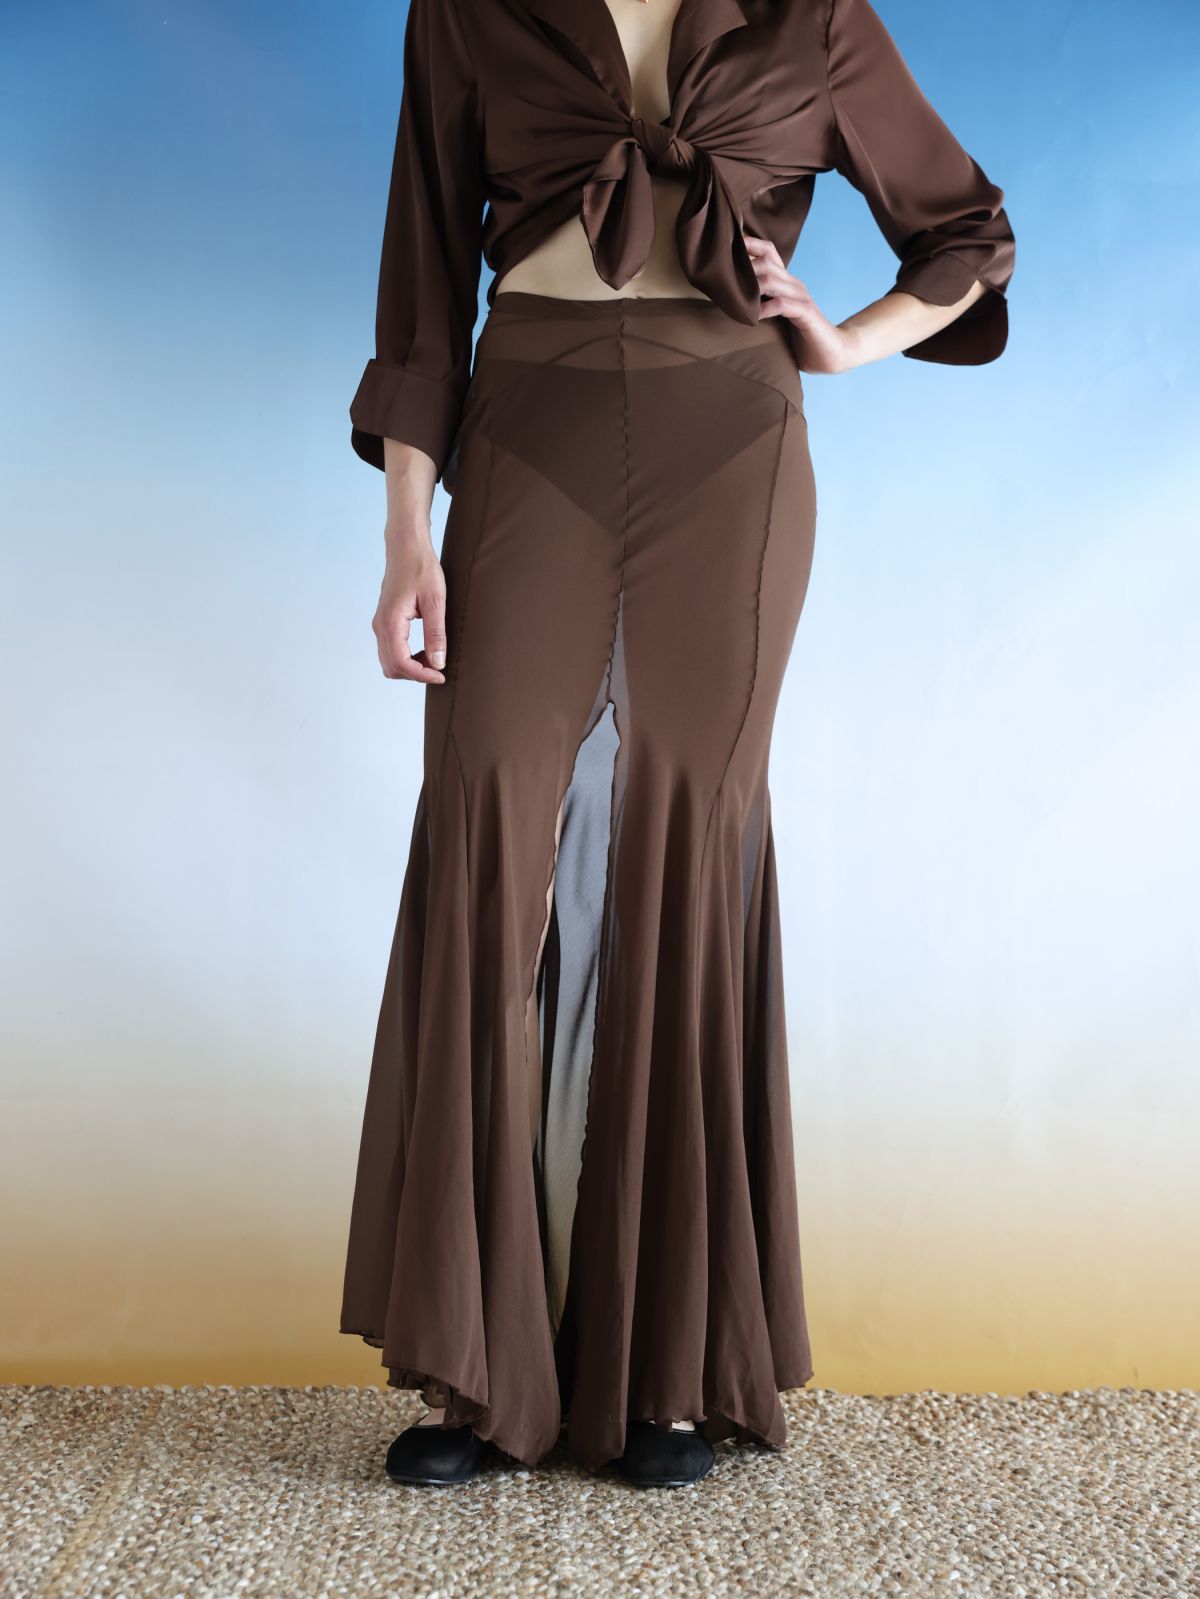  חצאית מקסי שיפון שקפקפה / Elle Sasson של TX COLLAB